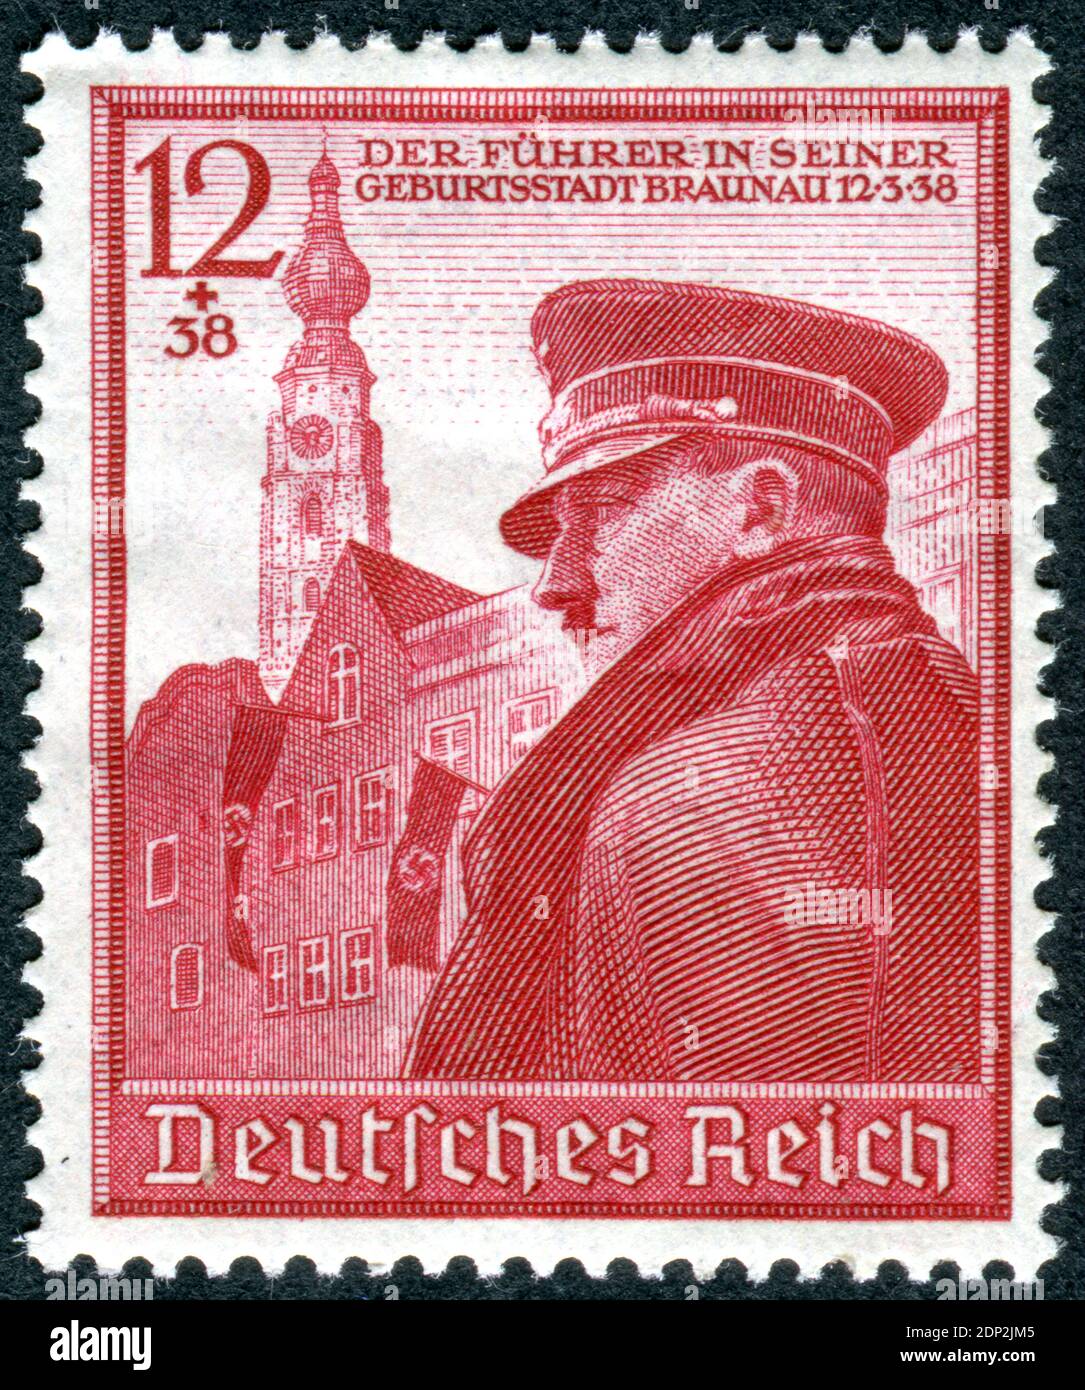 ALLEMAGNE - VERS 1939: Timbre imprimé en Allemagne, montre Adolf Hitler à Braunau am Inn, Autriche. Adolf Hitler - politicien allemand, dirigeant (Fuehrer) d'Allemagne et du Parti nazi, vers 1939 Banque D'Images